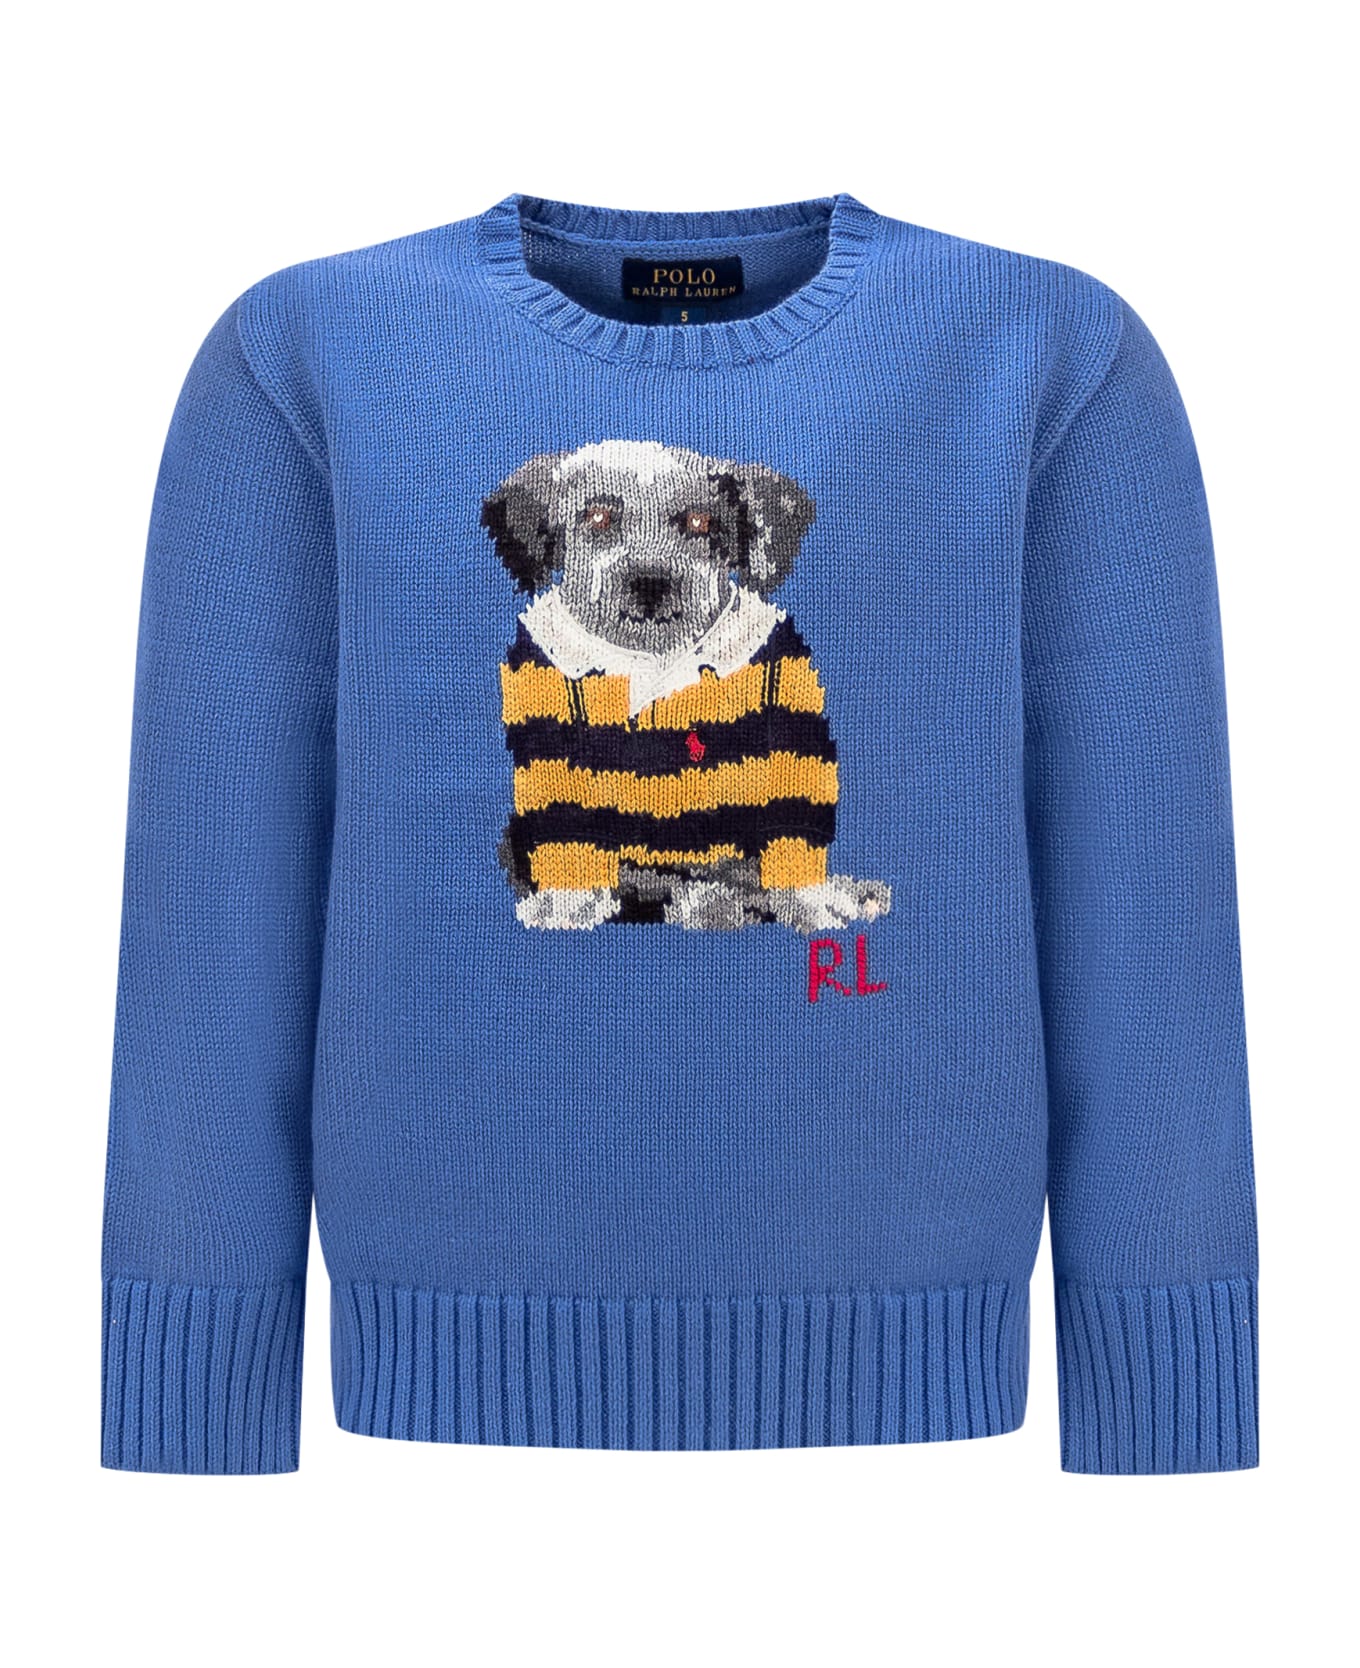 Polo Ralph Lauren Puppy Shirt - NEW ENGLAND BLUE